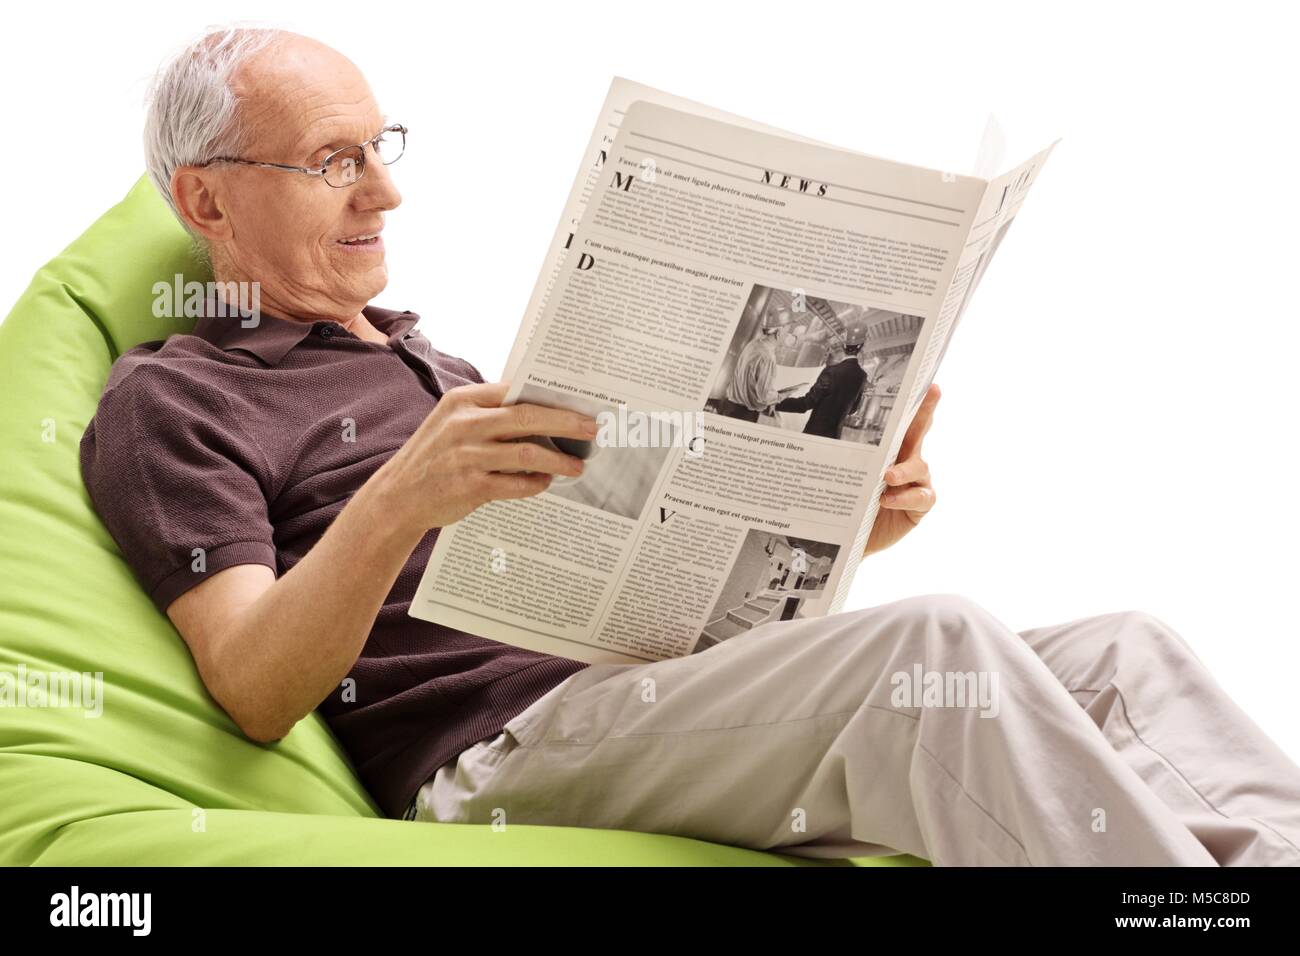 Hauts assis sur un pouf poire et lire un journal isolé sur fond blanc Banque D'Images